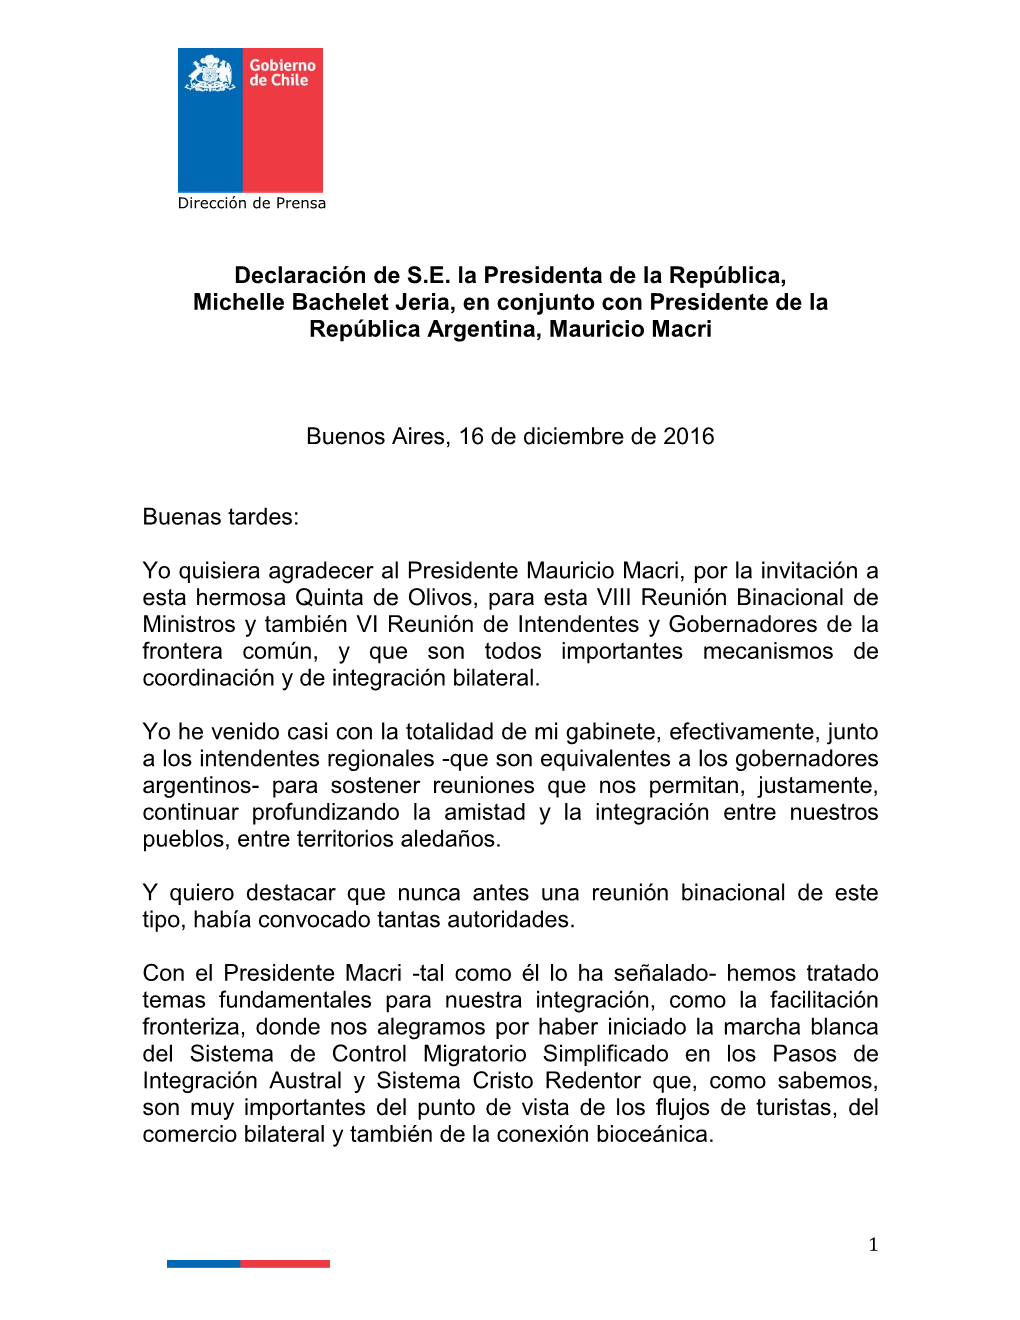 Declaración De S.E. La Presidenta De La República, Michelle Bachelet Jeria, En Conjunto Con Presidente De La República Argentina, Mauricio Macri